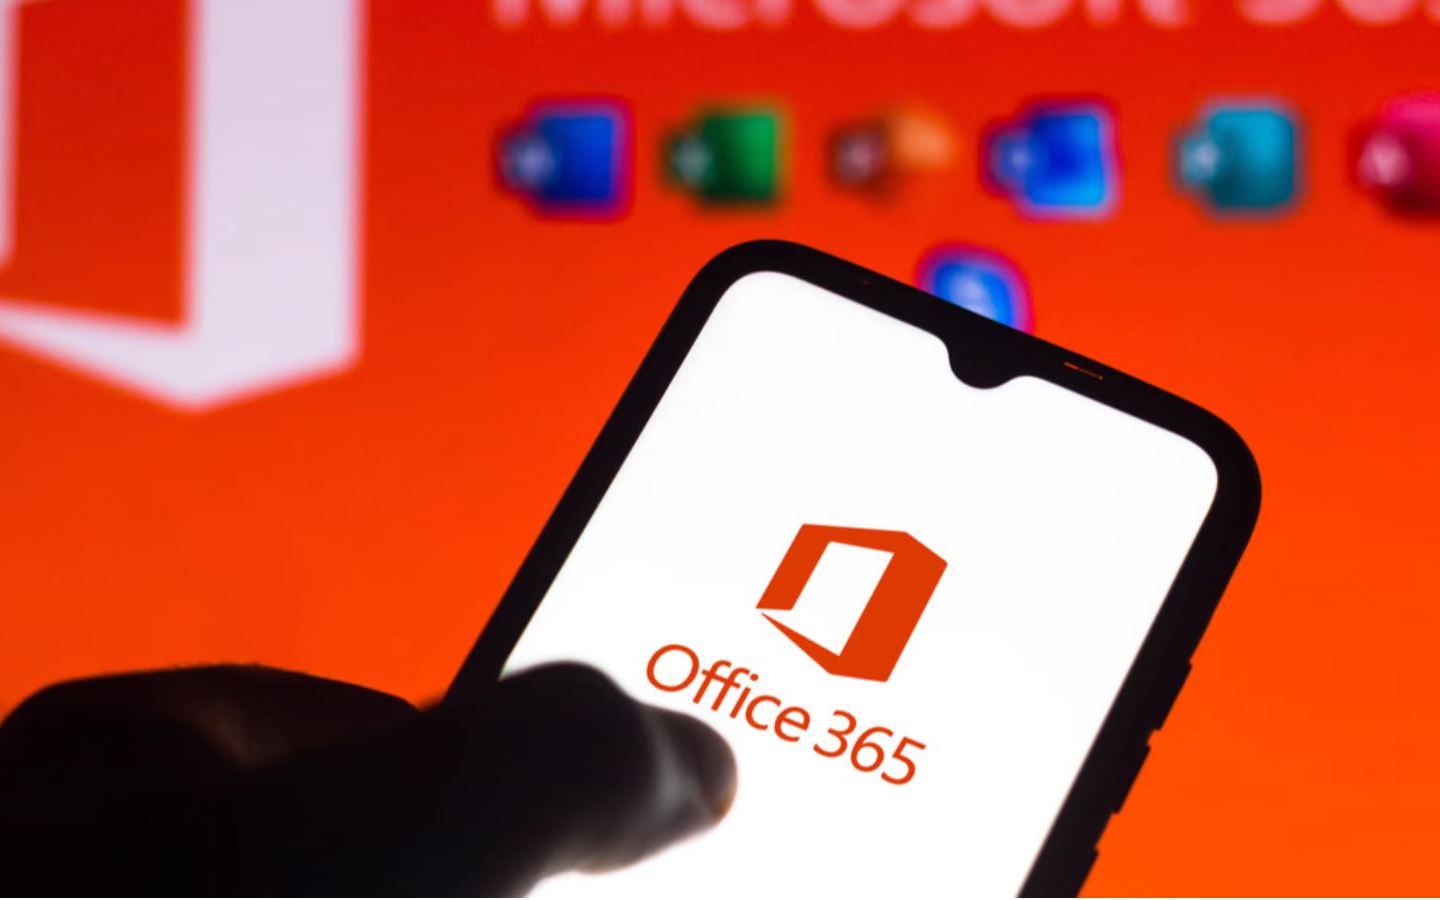 Microsoft Office 365 có thể bị tin tặc khai thác để tấn công ransomware -  Báo điện tử VnMedia - Tin nóng Việt Nam và thế giới